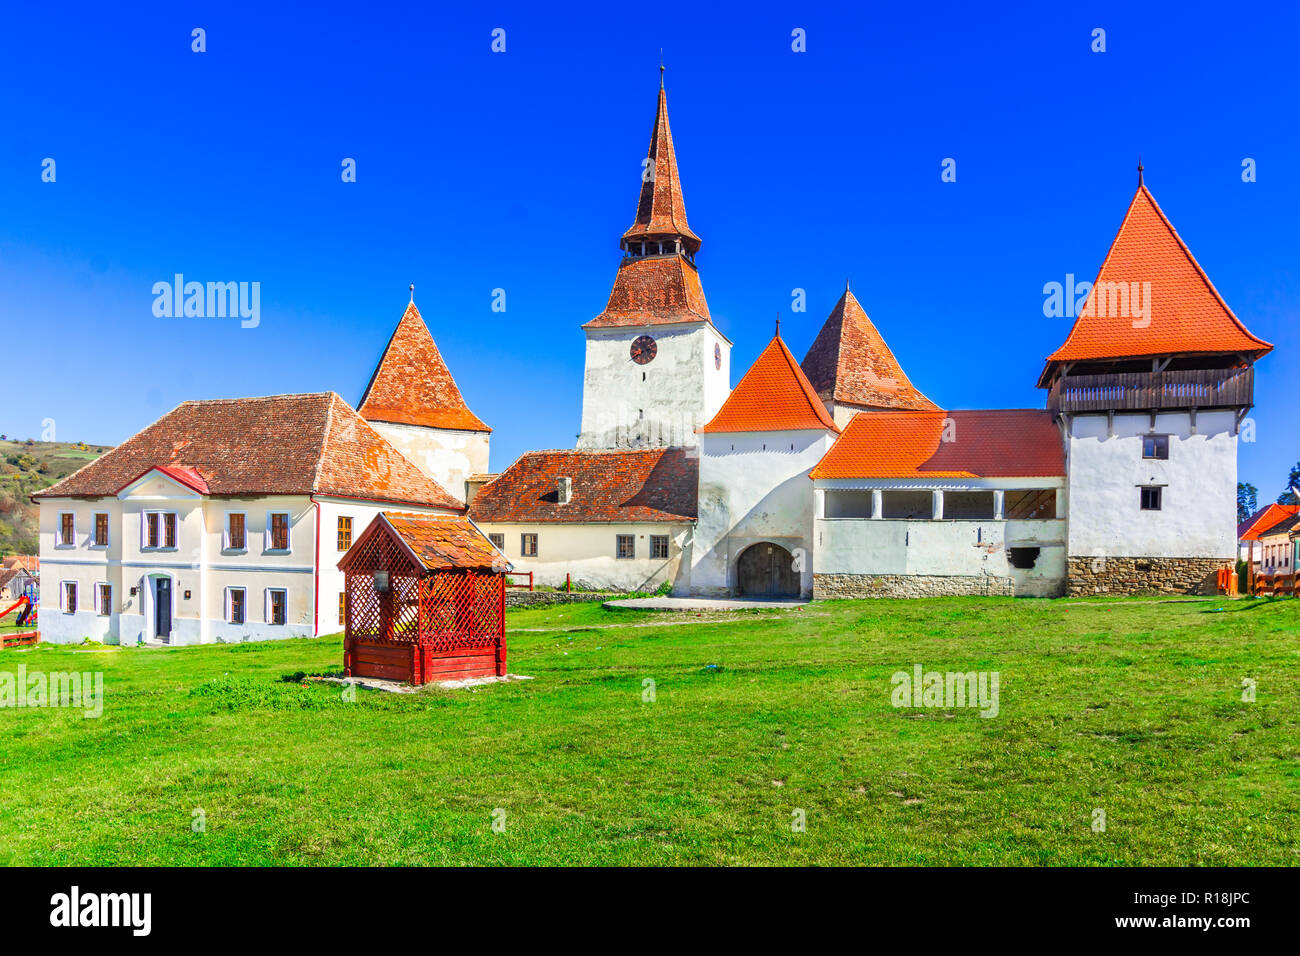 Archita, Romania - medievale chiesa fortificata nel villaggio sassone Transilvania, in una bella giornata di autunno Foto Stock